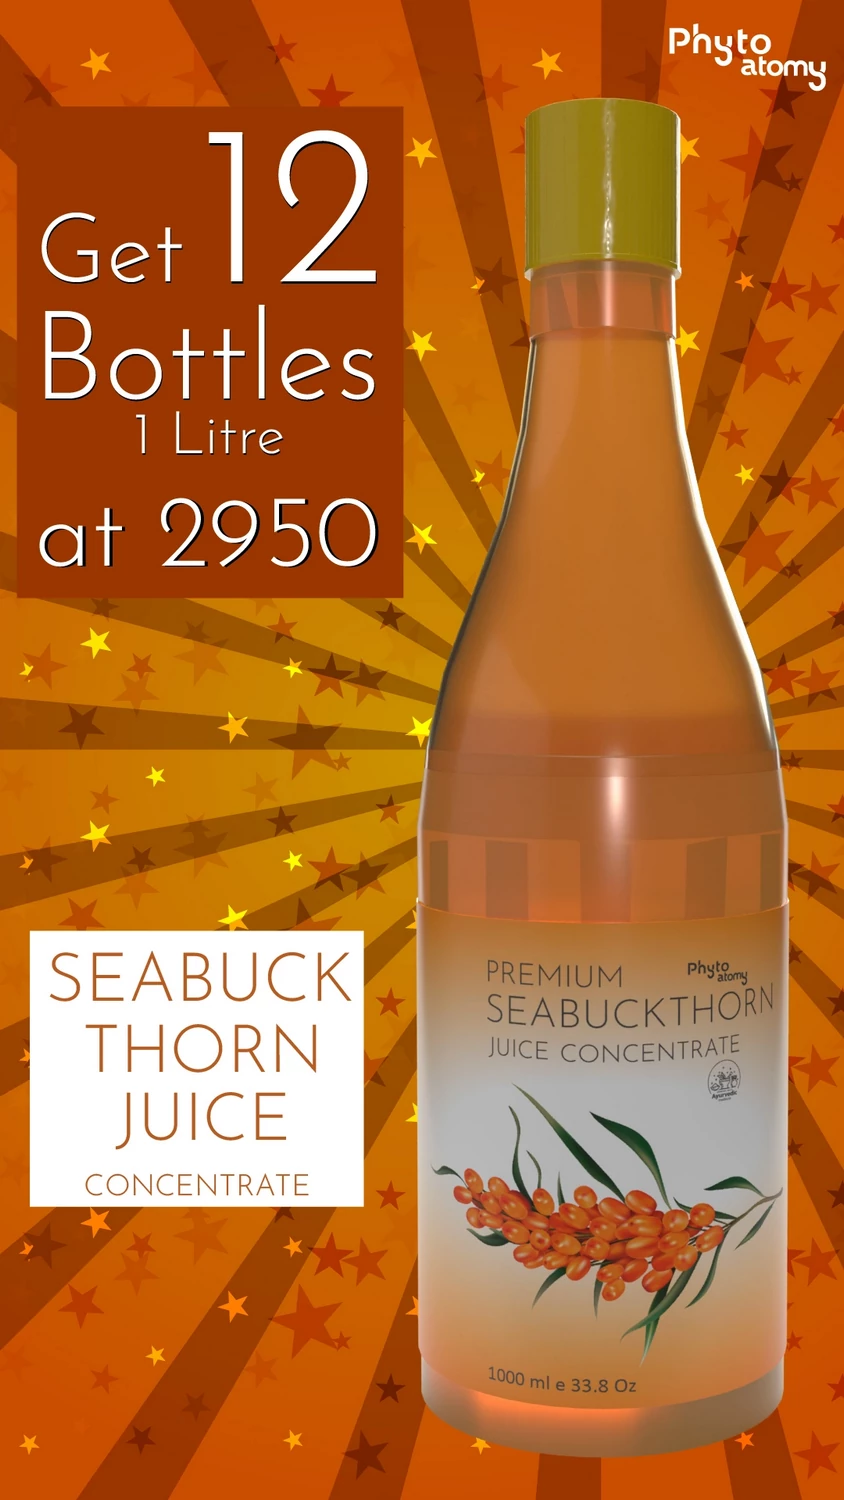 RBV B2B Seabuckthorn Juice1000 ml (12 Bottle)